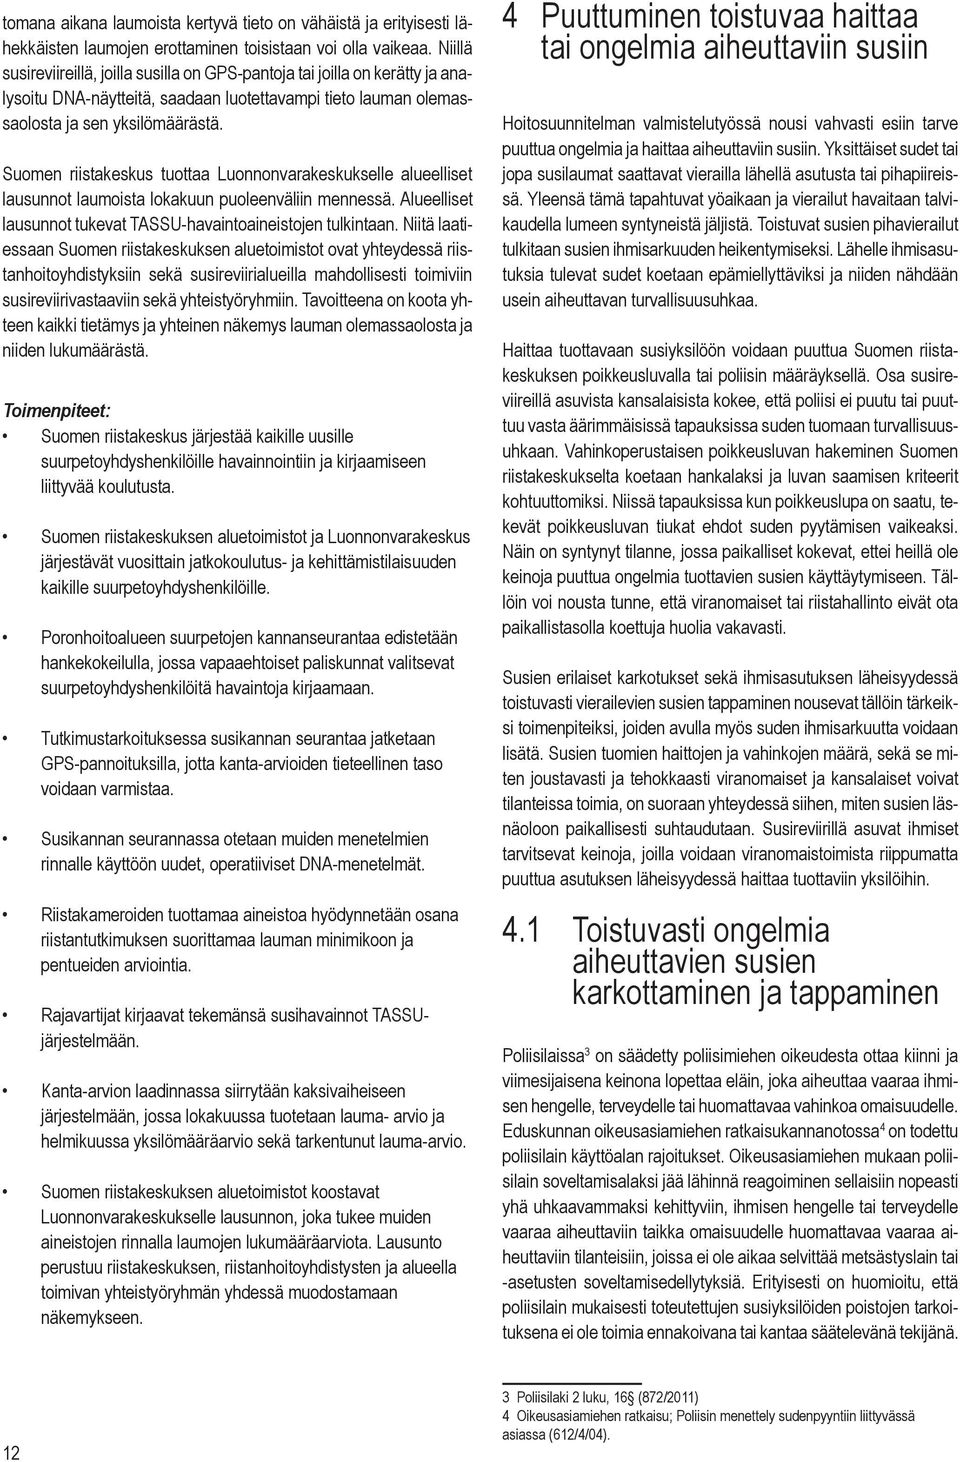 Suomen riistakeskus tuottaa Luonnonvarakeskukselle alueelliset lausunnot laumoista lokakuun puoleenväliin mennessä. Alueelliset lausunnot tukevat TASSU-havaintoaineistojen tulkintaan.